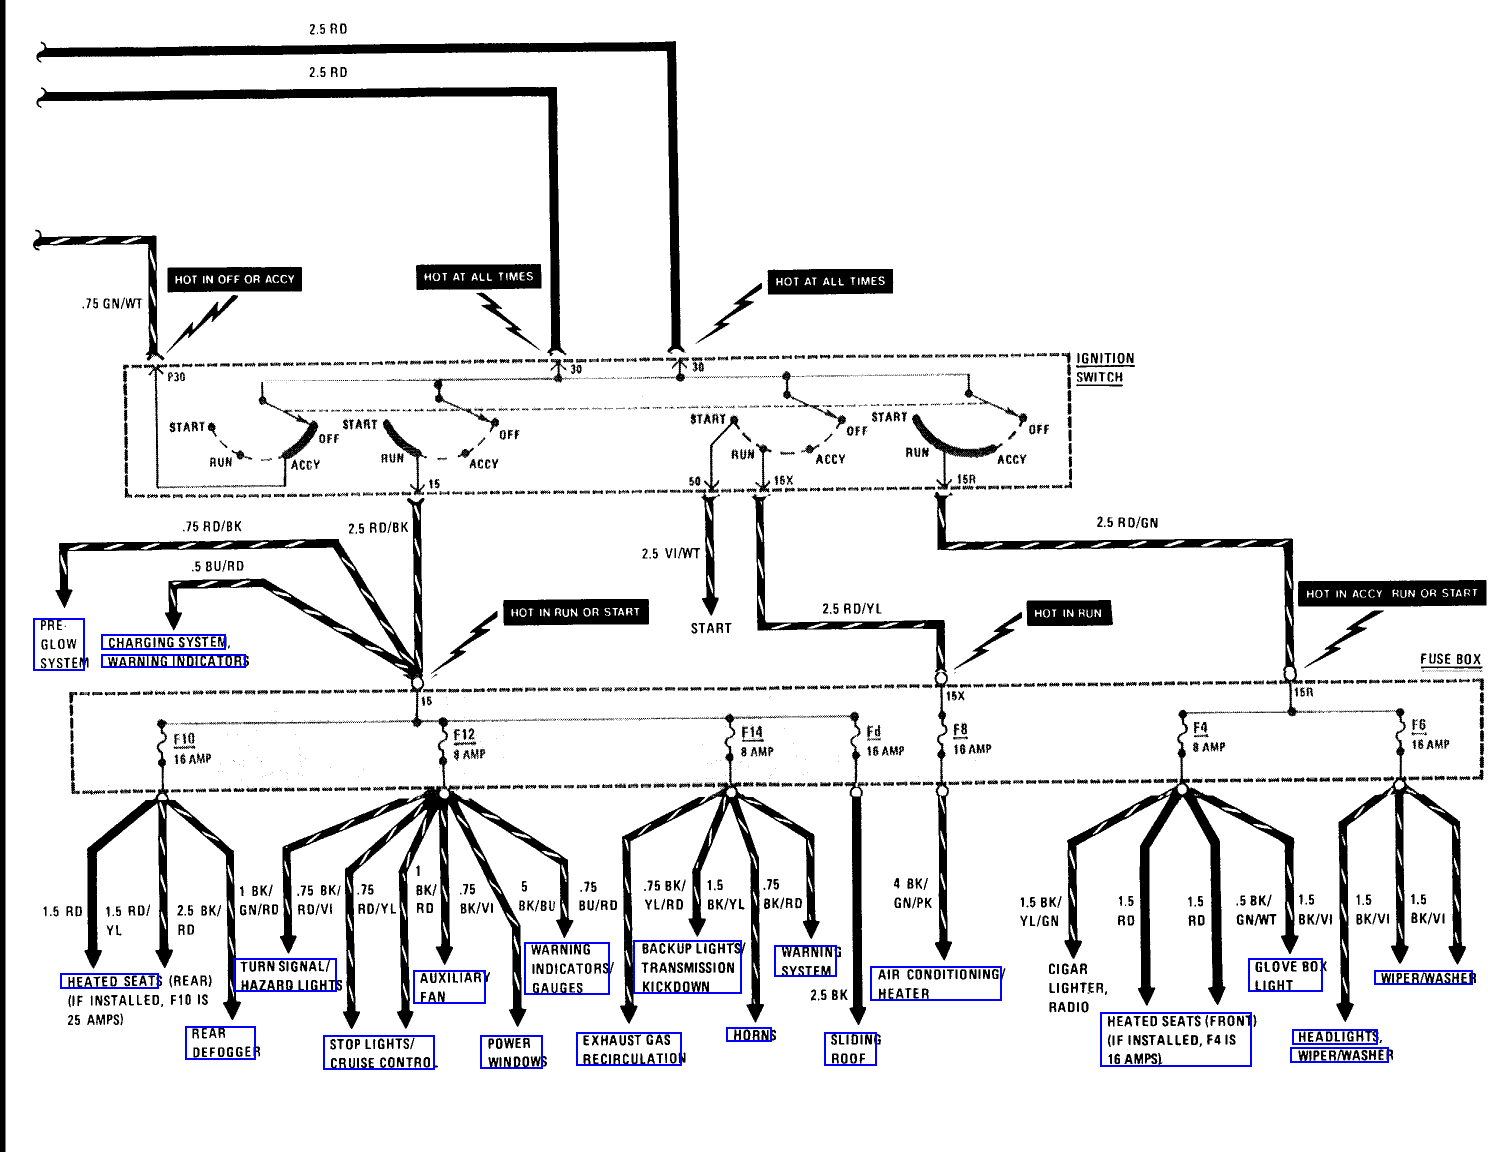 mercedes benz w123 wiring diagram